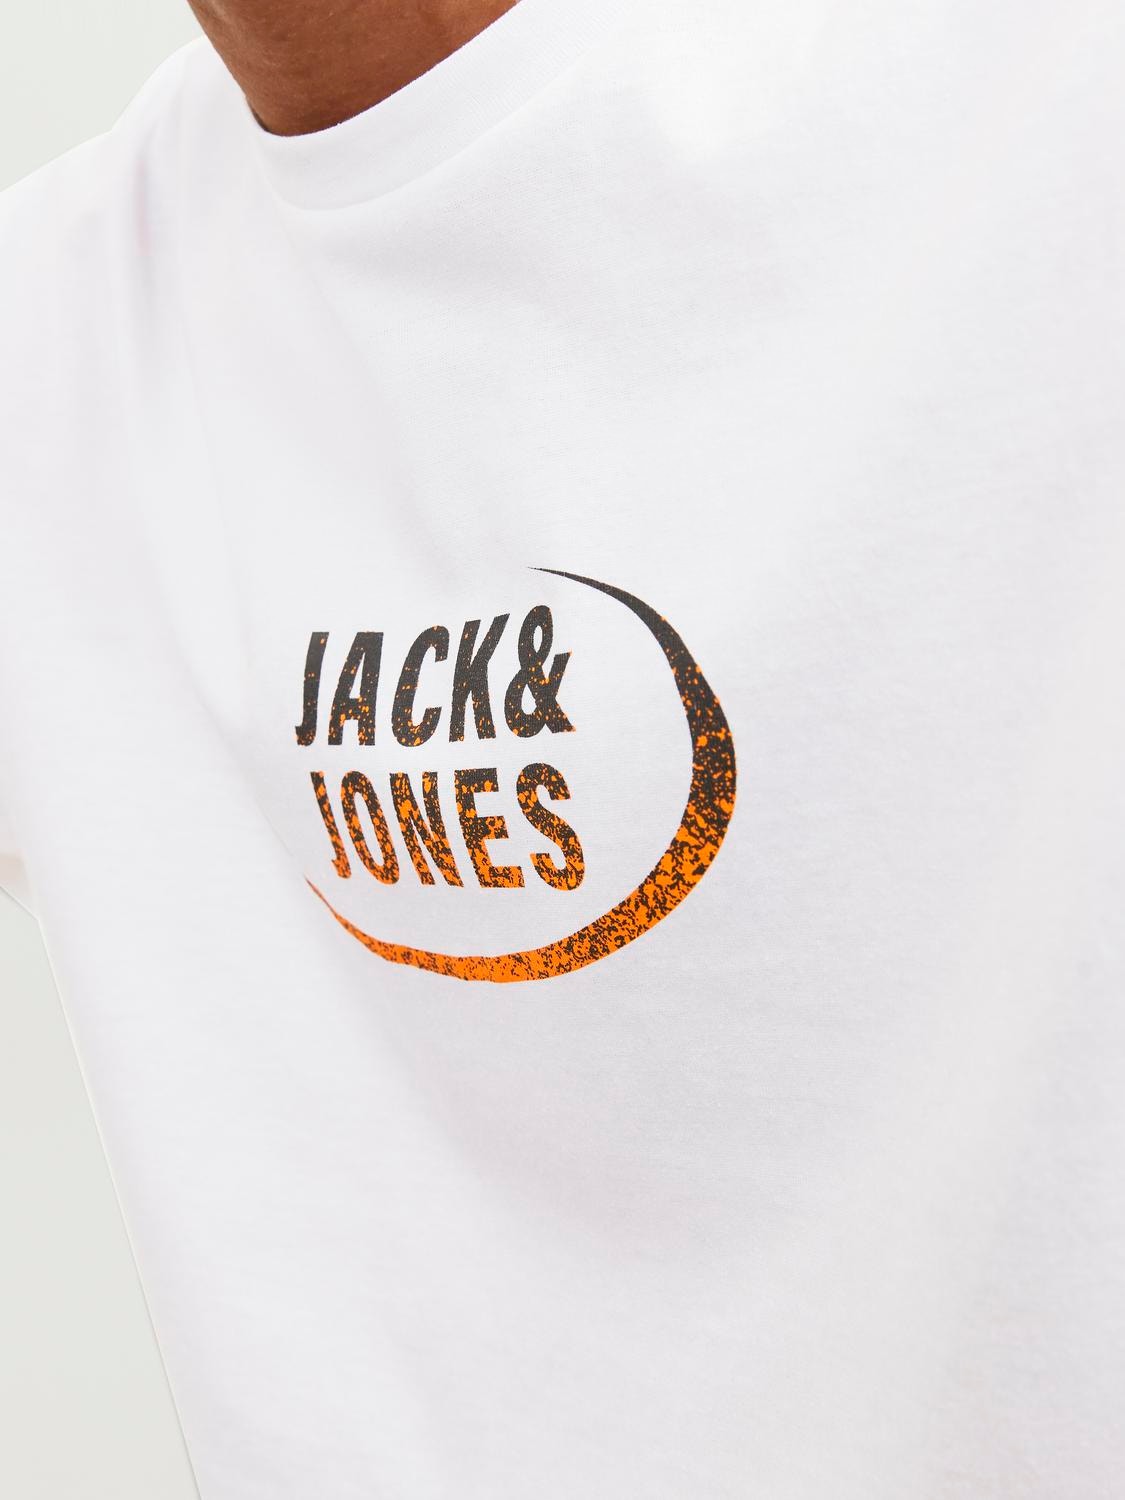 https://images.jackjones.com/12234363/4430675/007/jackjones-logocrewneckt-shirt-white.jpg?v=39a717f82363c73a44108b729e31d6d0&format=webp&width=1280&quality=90&key=25-0-3